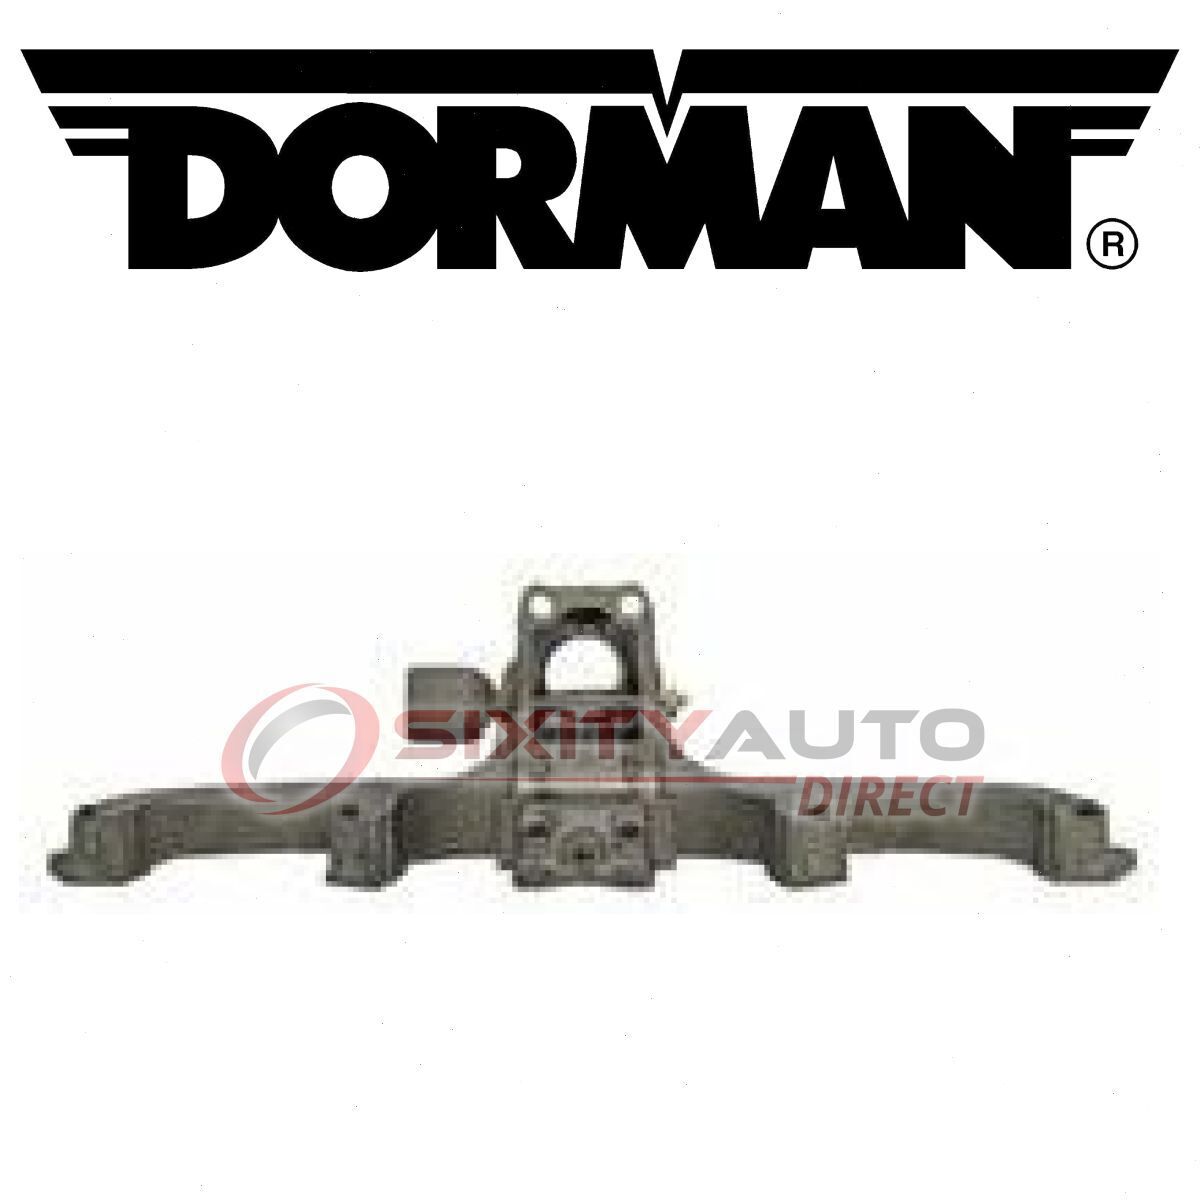 Dorman Exhaust Manifold for 1971-1978 American Motors Matador 3.8L 4.2L L6 kh